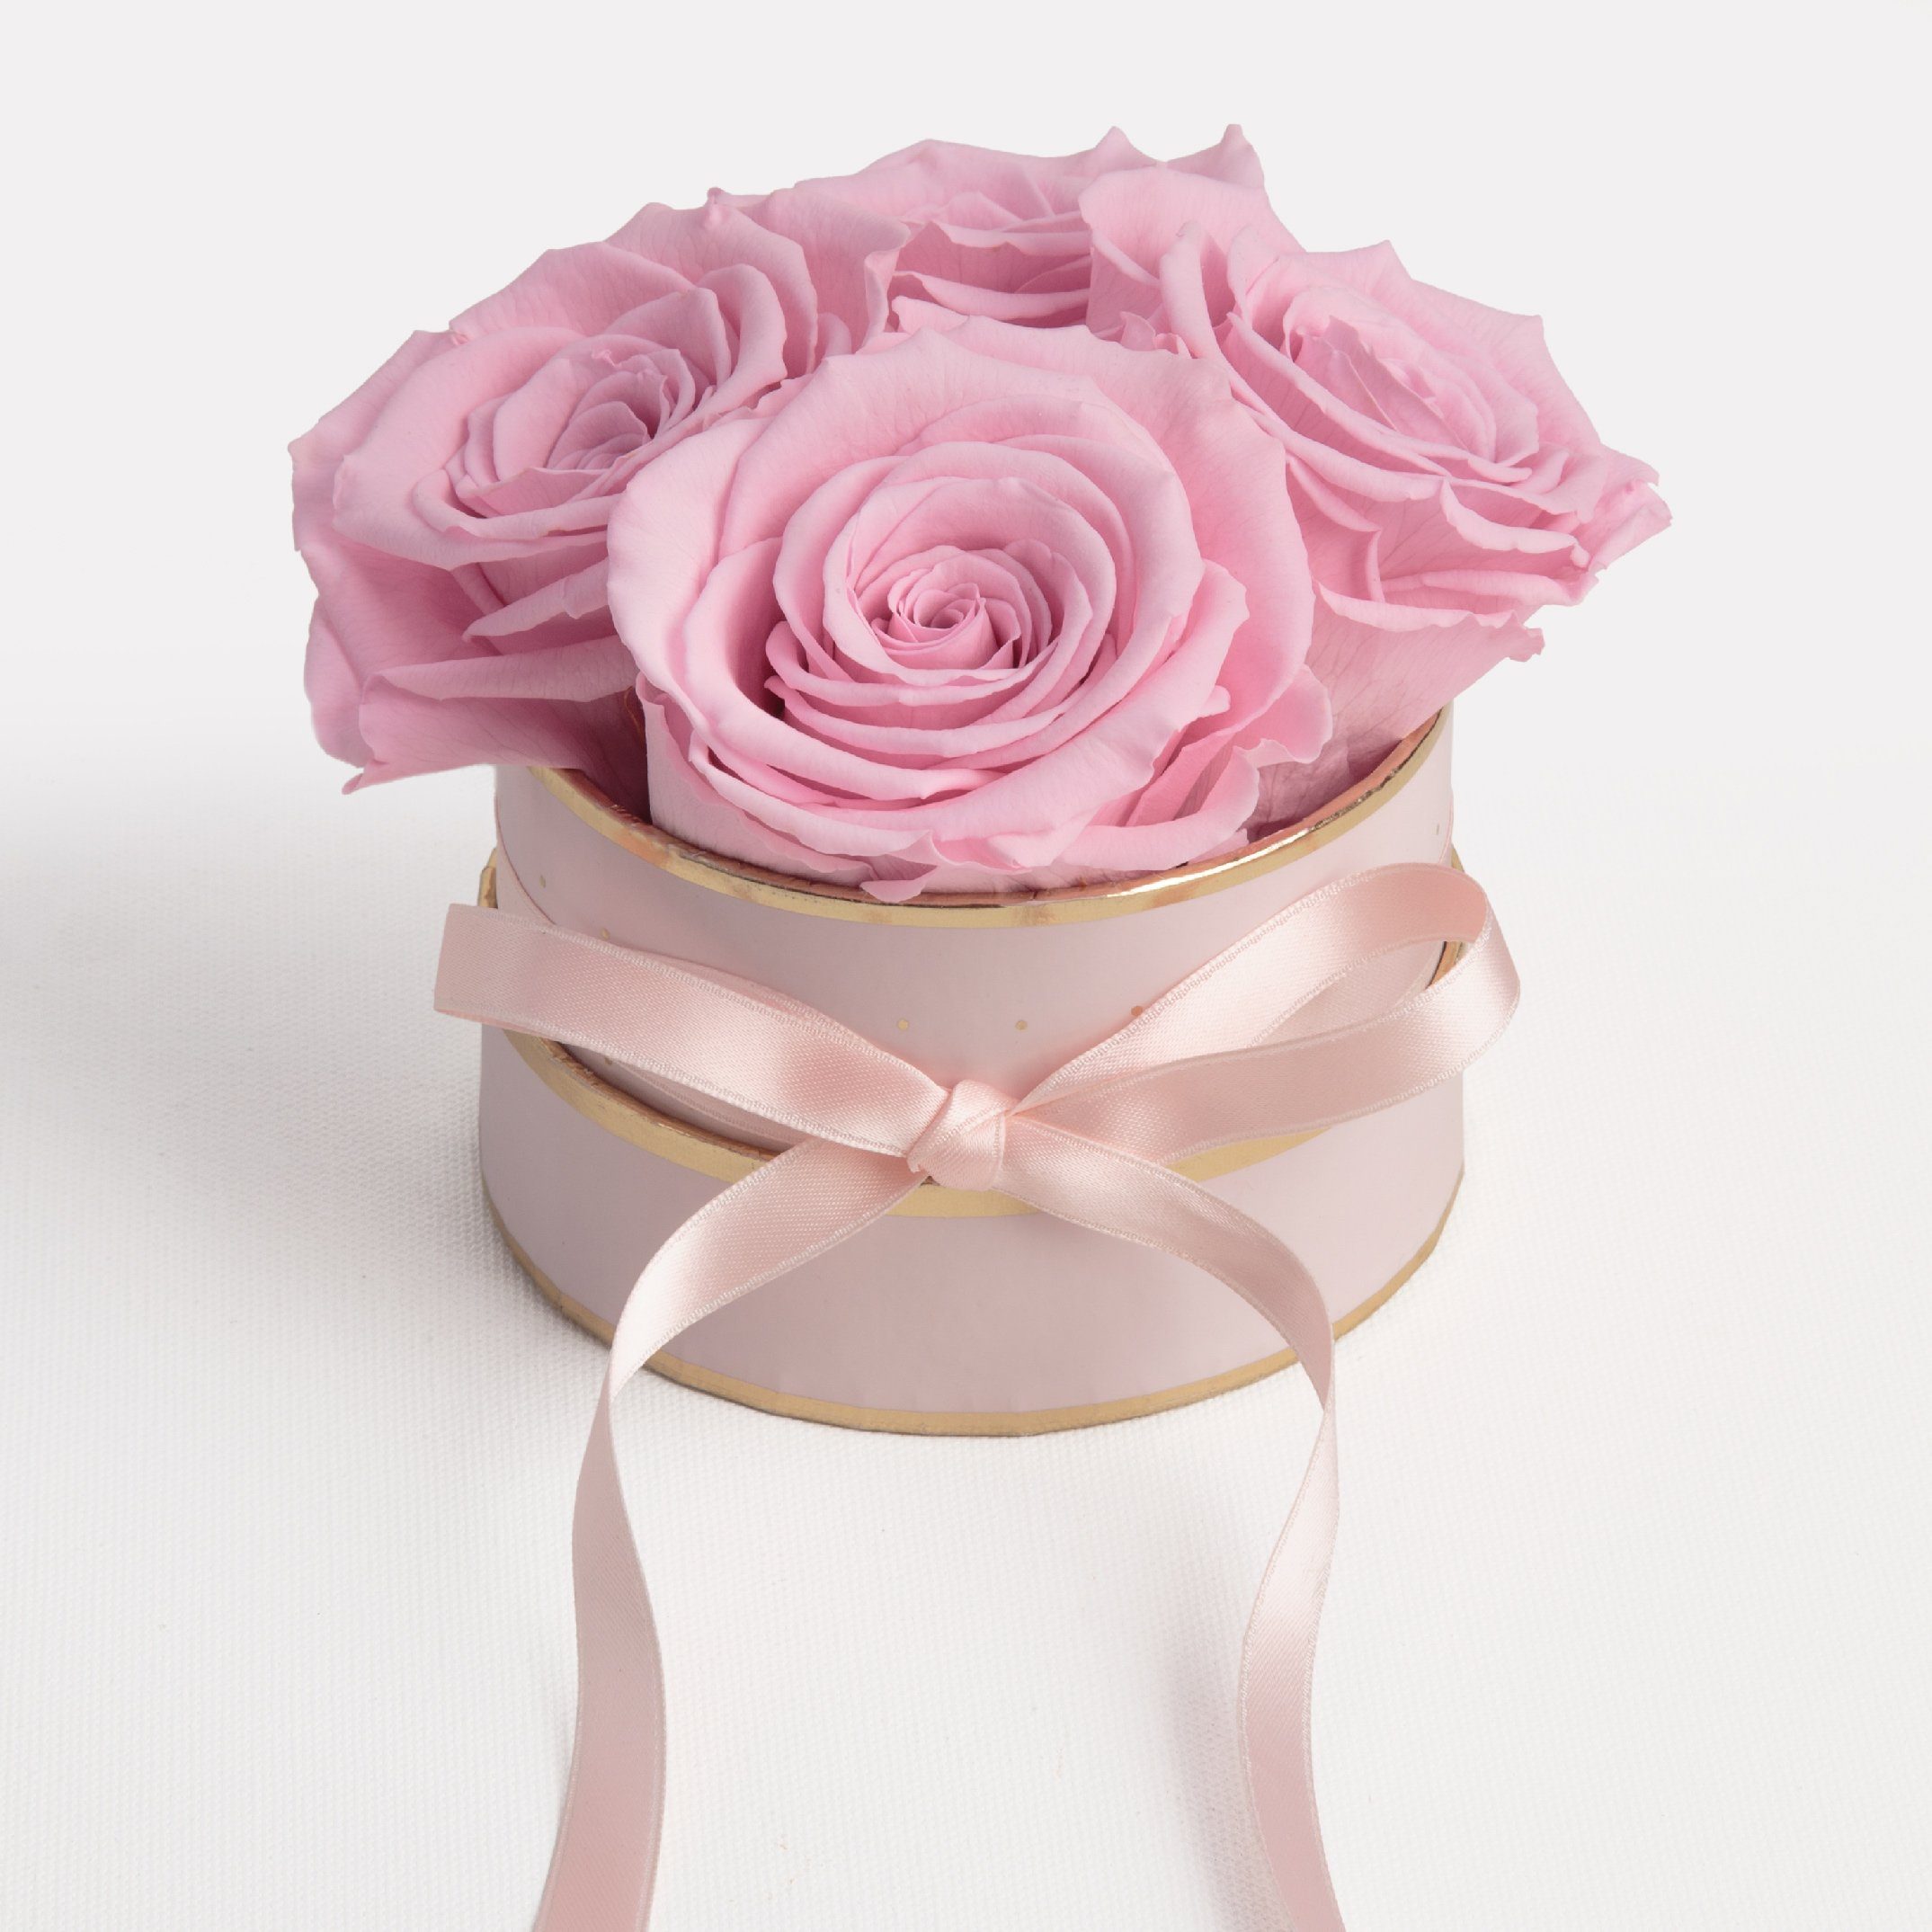 Rosenbox Frauen für Rosen konservierte rund Infinity ROSEMARIE 4 10 Rose, cm, Heidelberg, Kunstblume SCHULZ Geschenk Rosen echte konservierte rosa Höhe